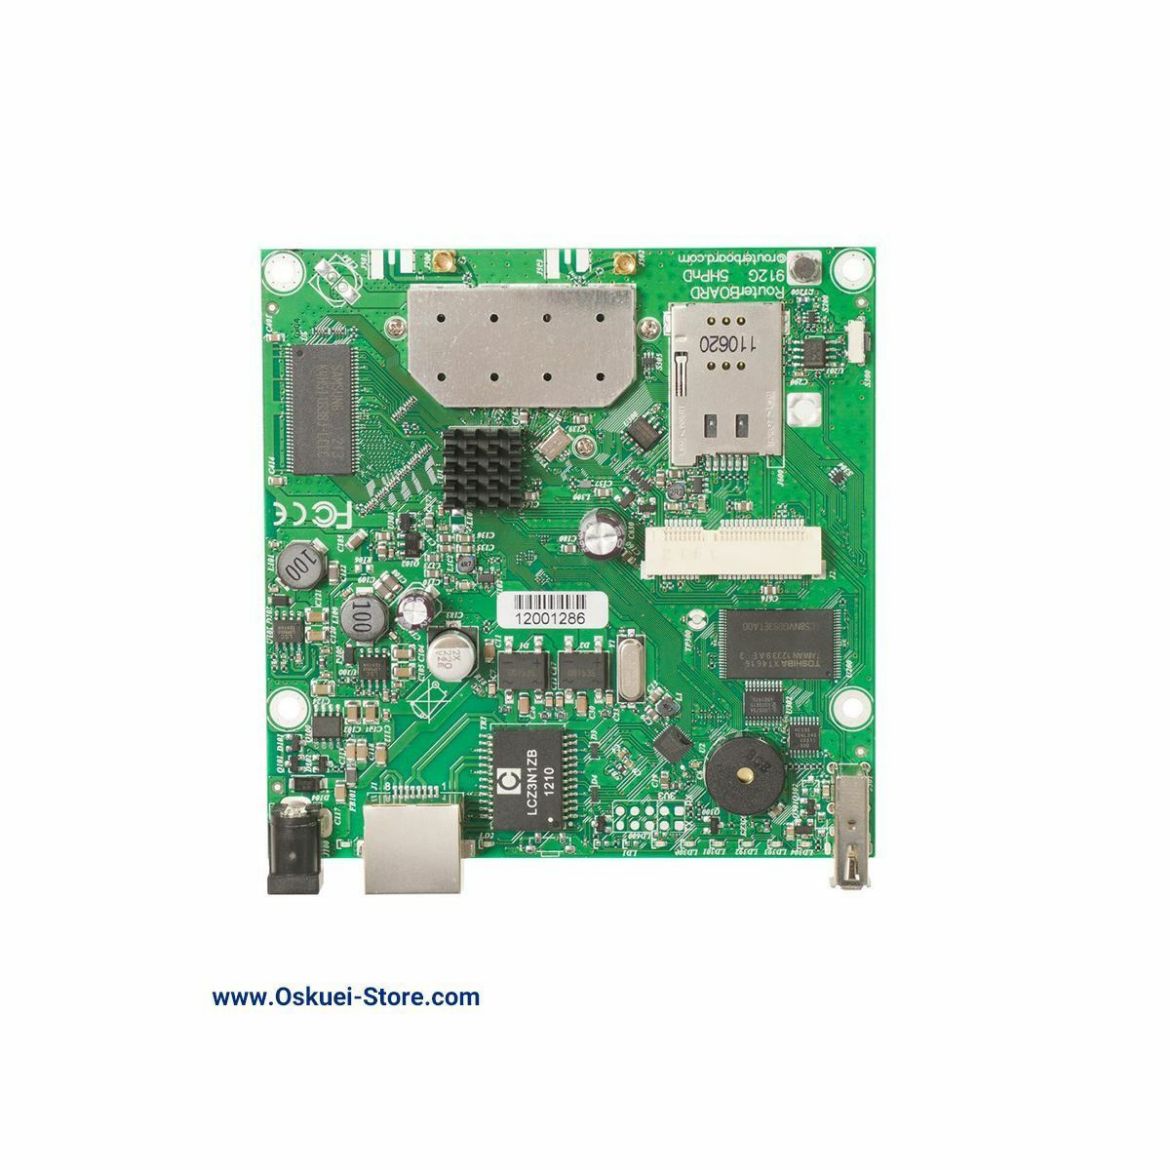 MikroTik RB912UAG-5HPnD Router Board Front